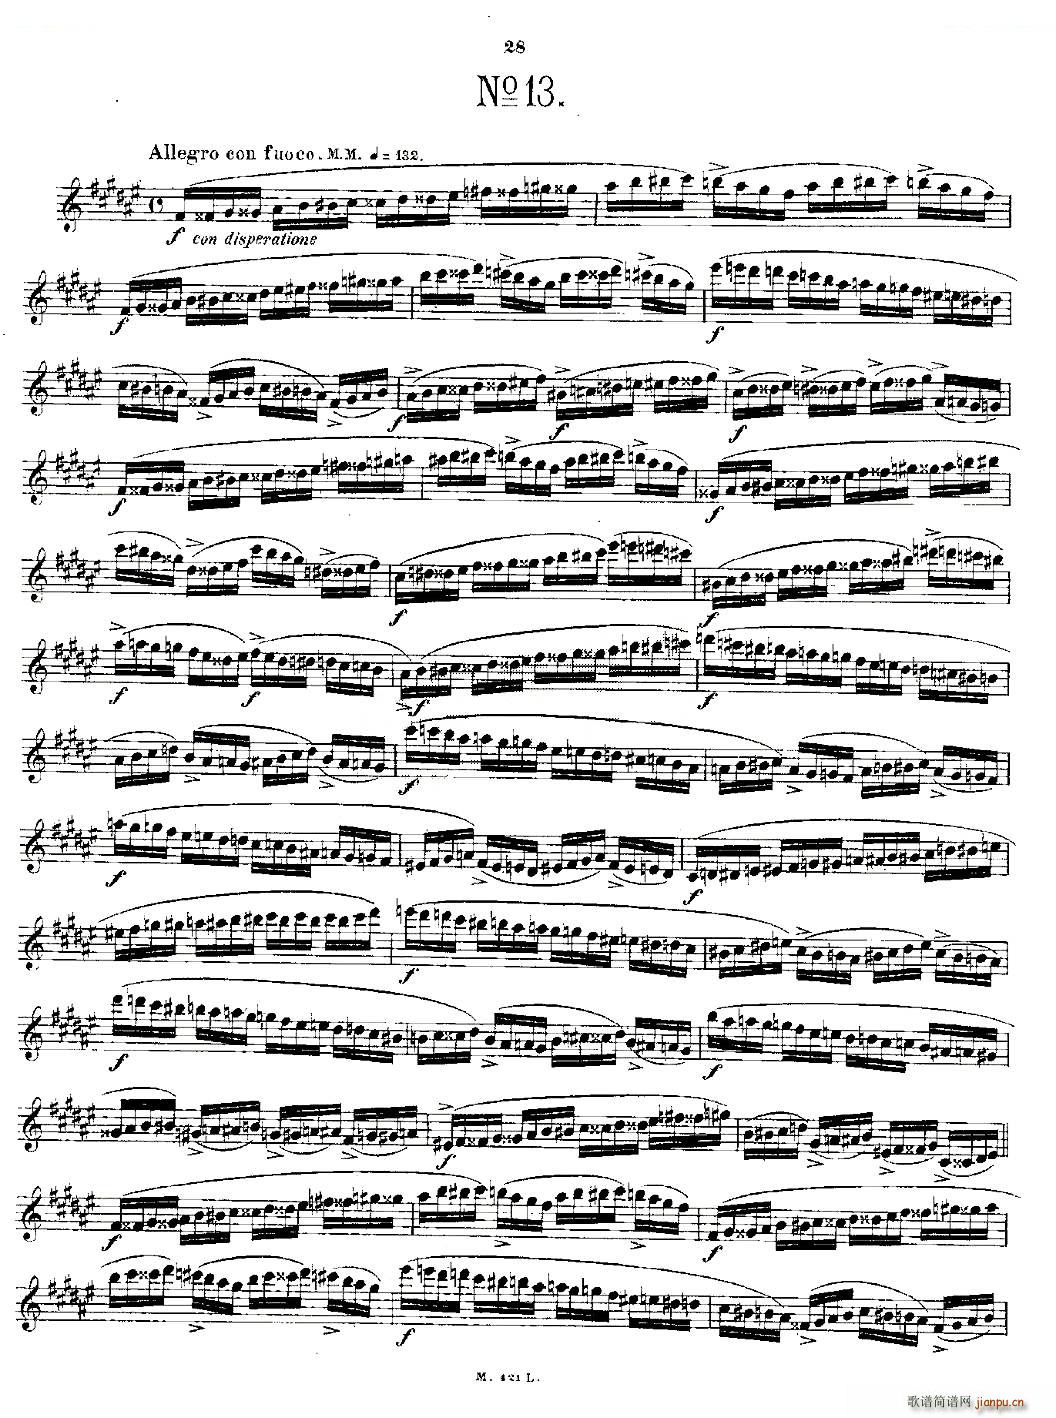 24首长笛练习曲 Op 15 之11 15 铜管(笛箫谱)6